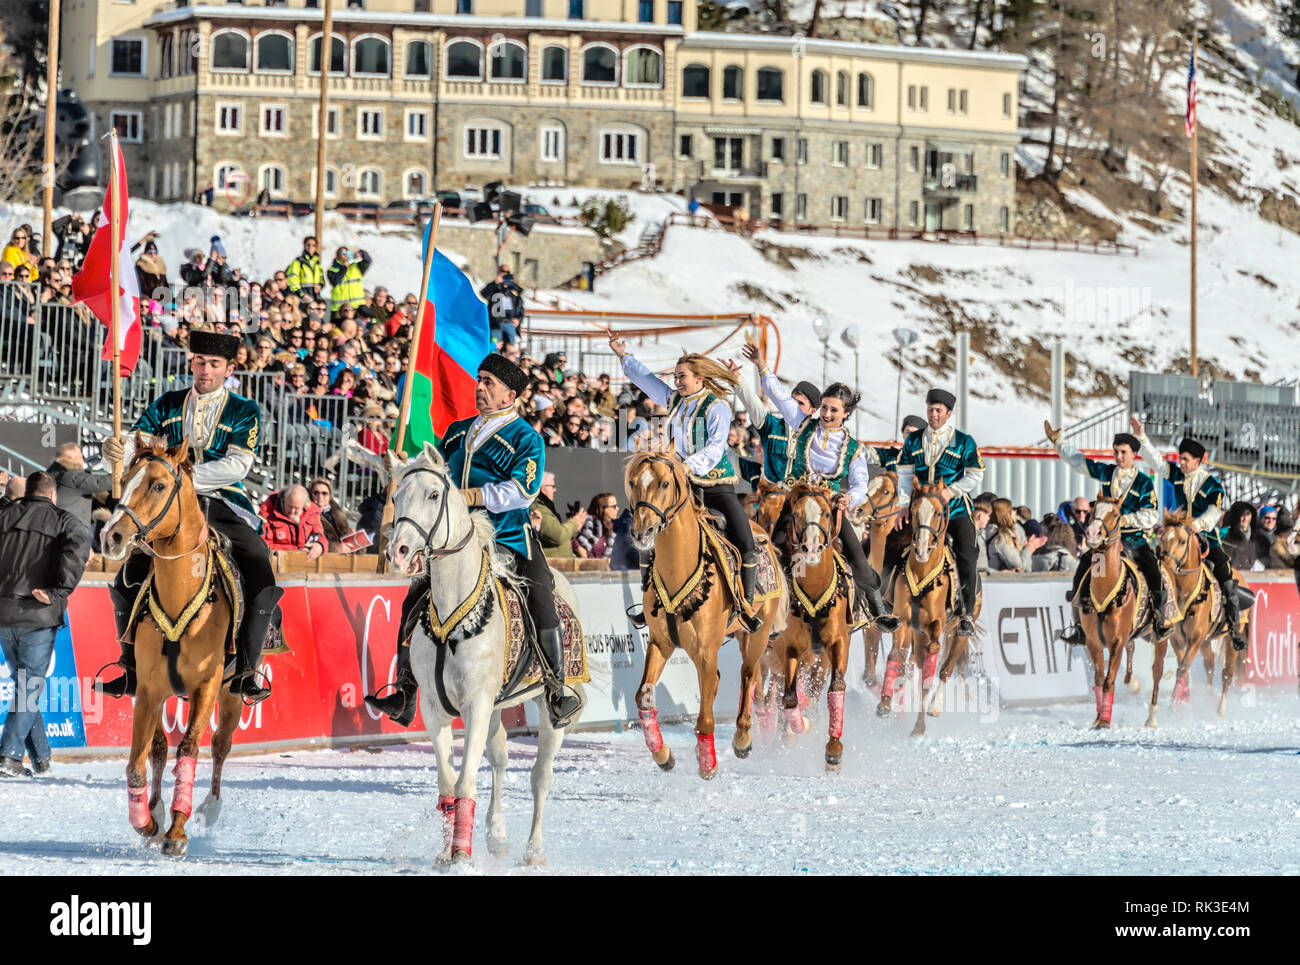 Pilotes azerbaïdjanais lors d'un spectacle pour le match de la coupe du monde Snow Polo 2019, St Moritz, Suisse Banque D'Images